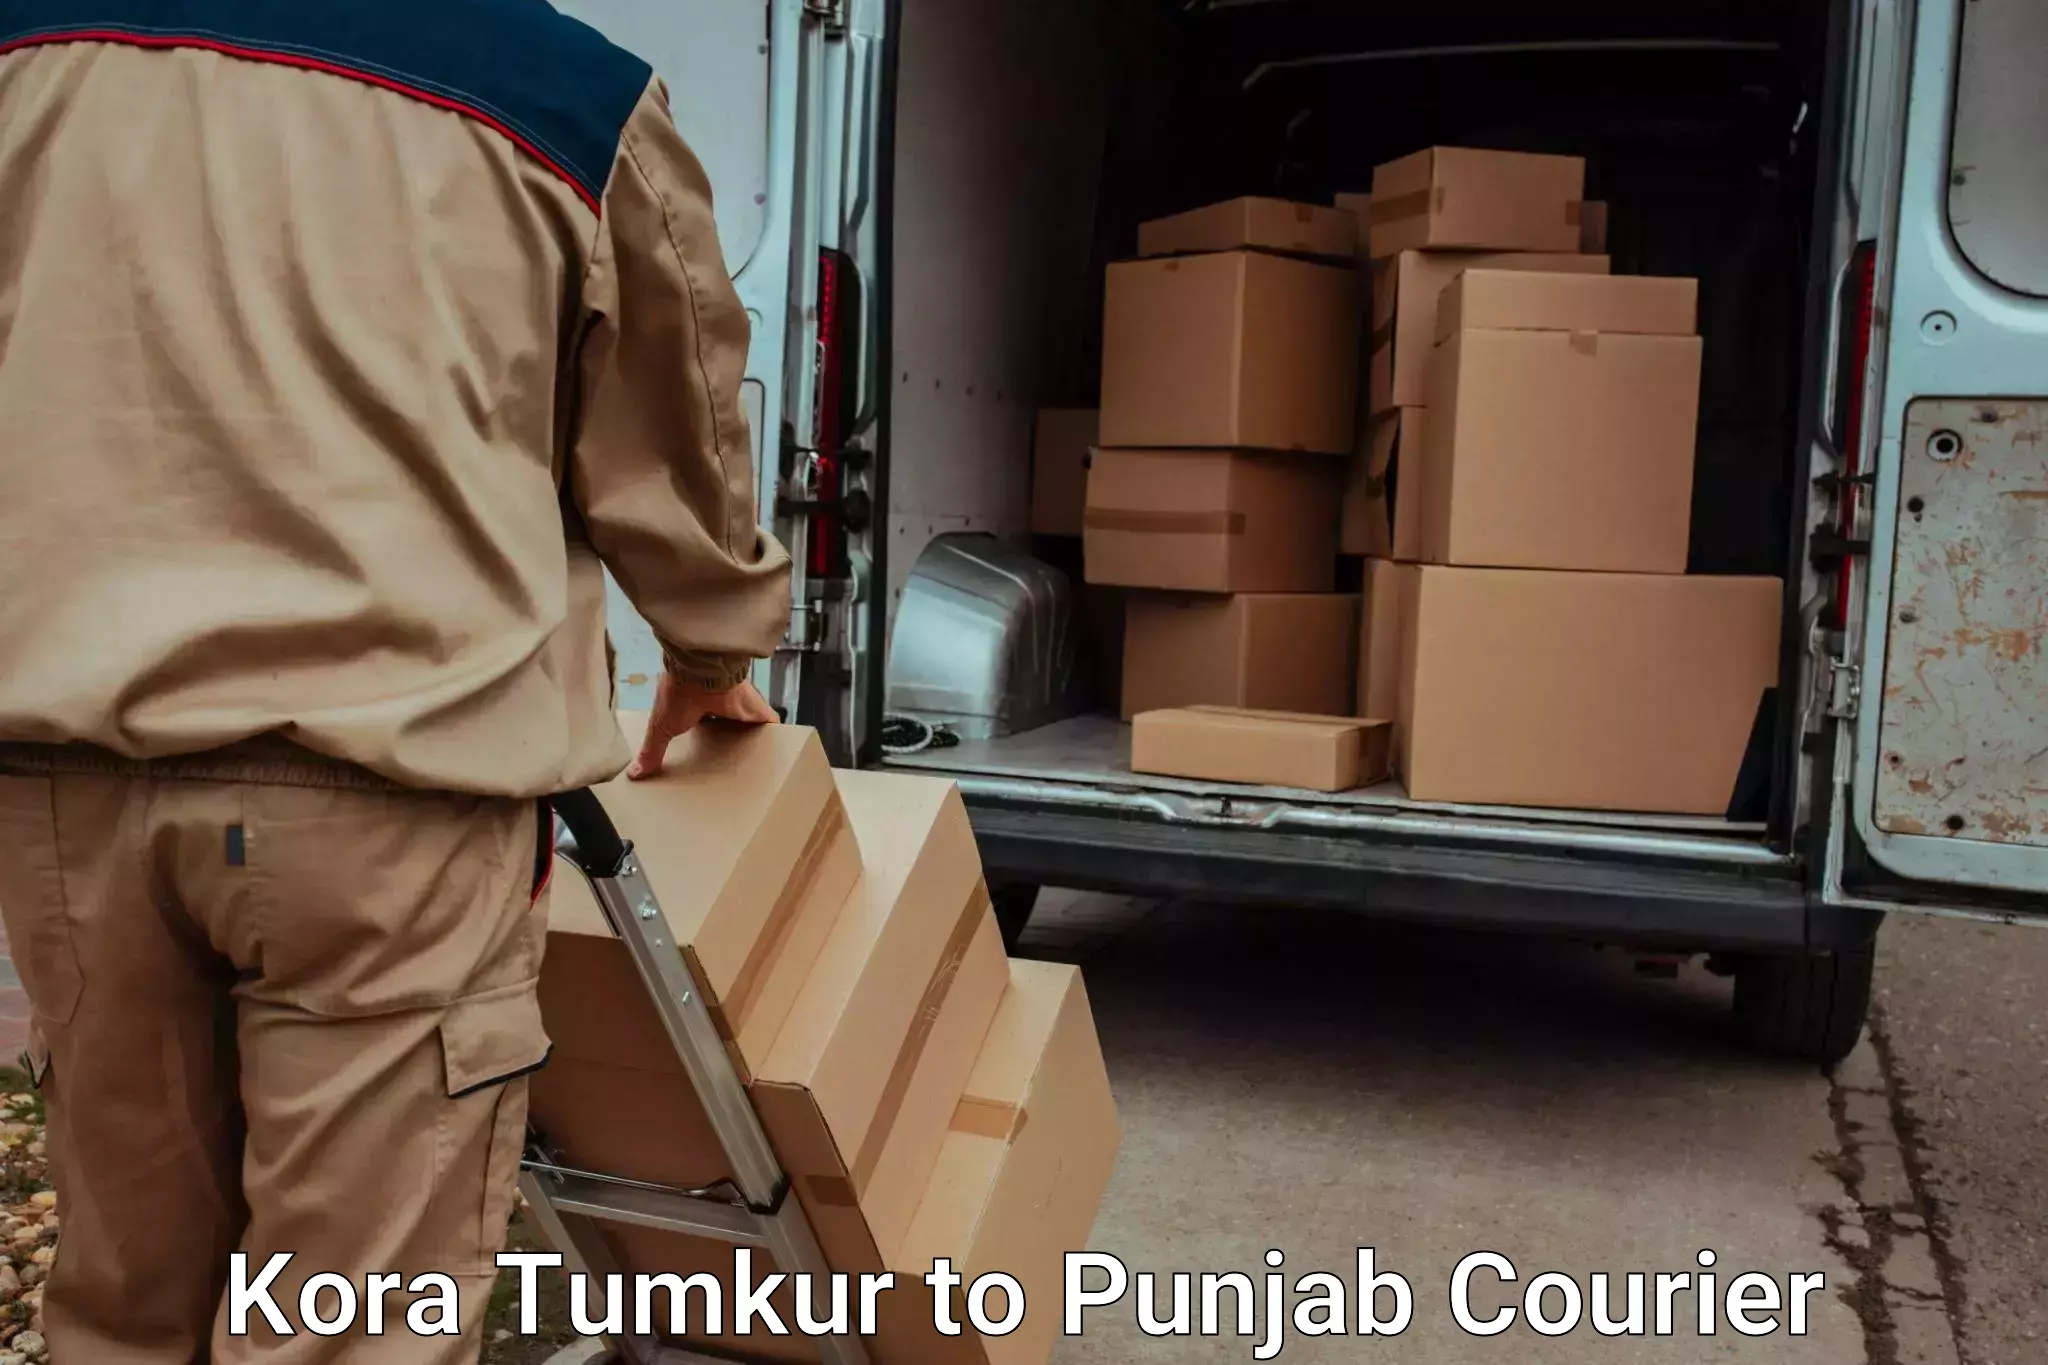 Quick luggage shipment Kora Tumkur to Punjab